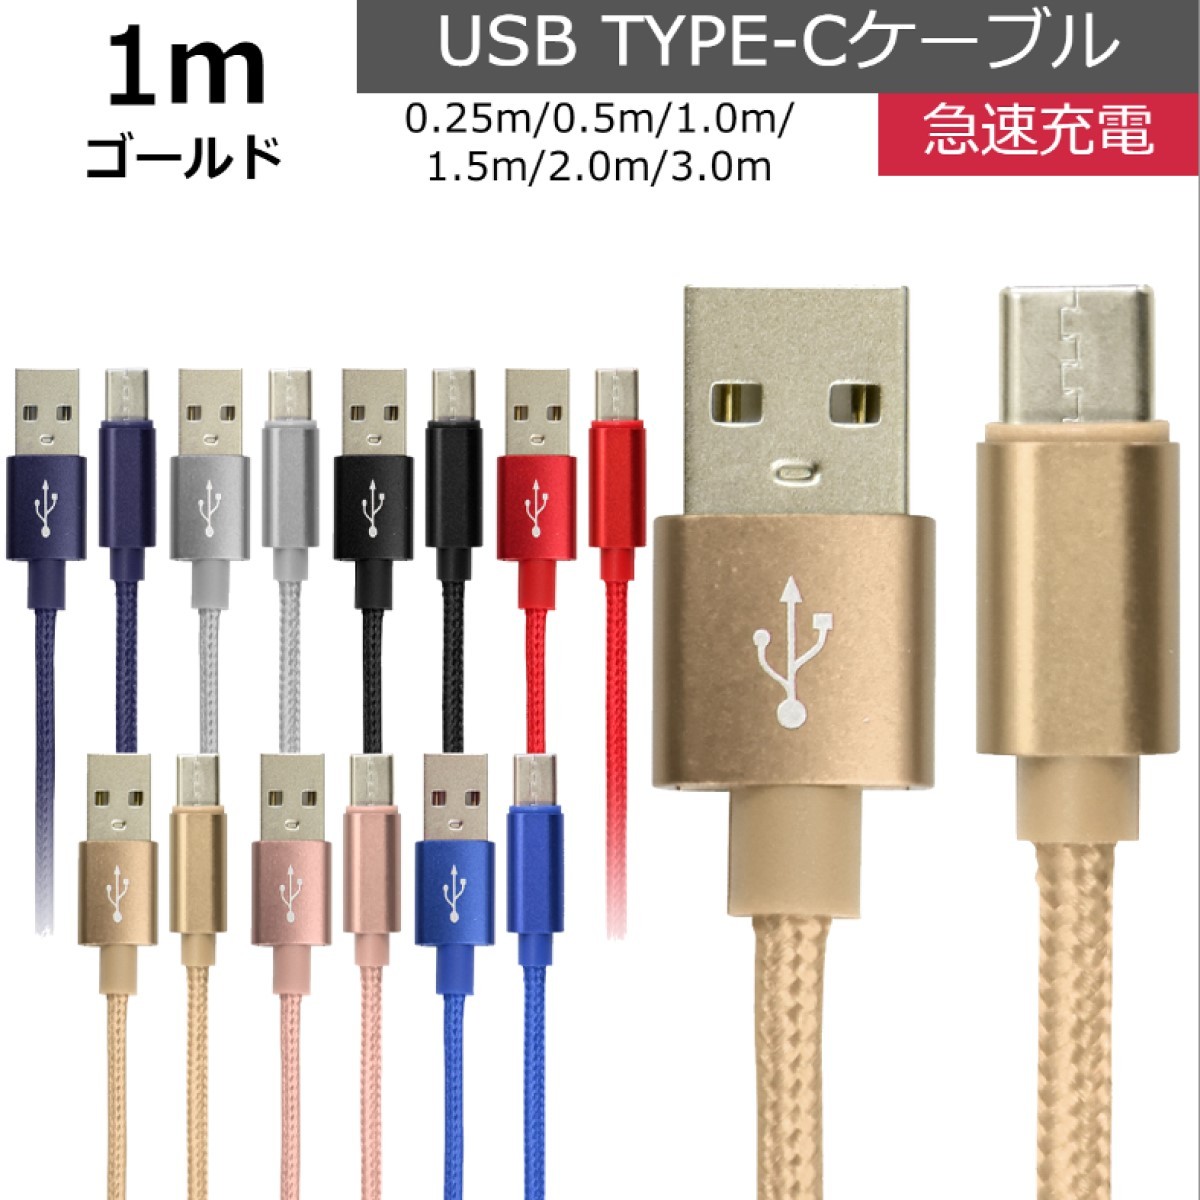 未使用 USB type-C ケーブル ゴールド 1m iPhone iPad airpods 充電 データ転送_画像1